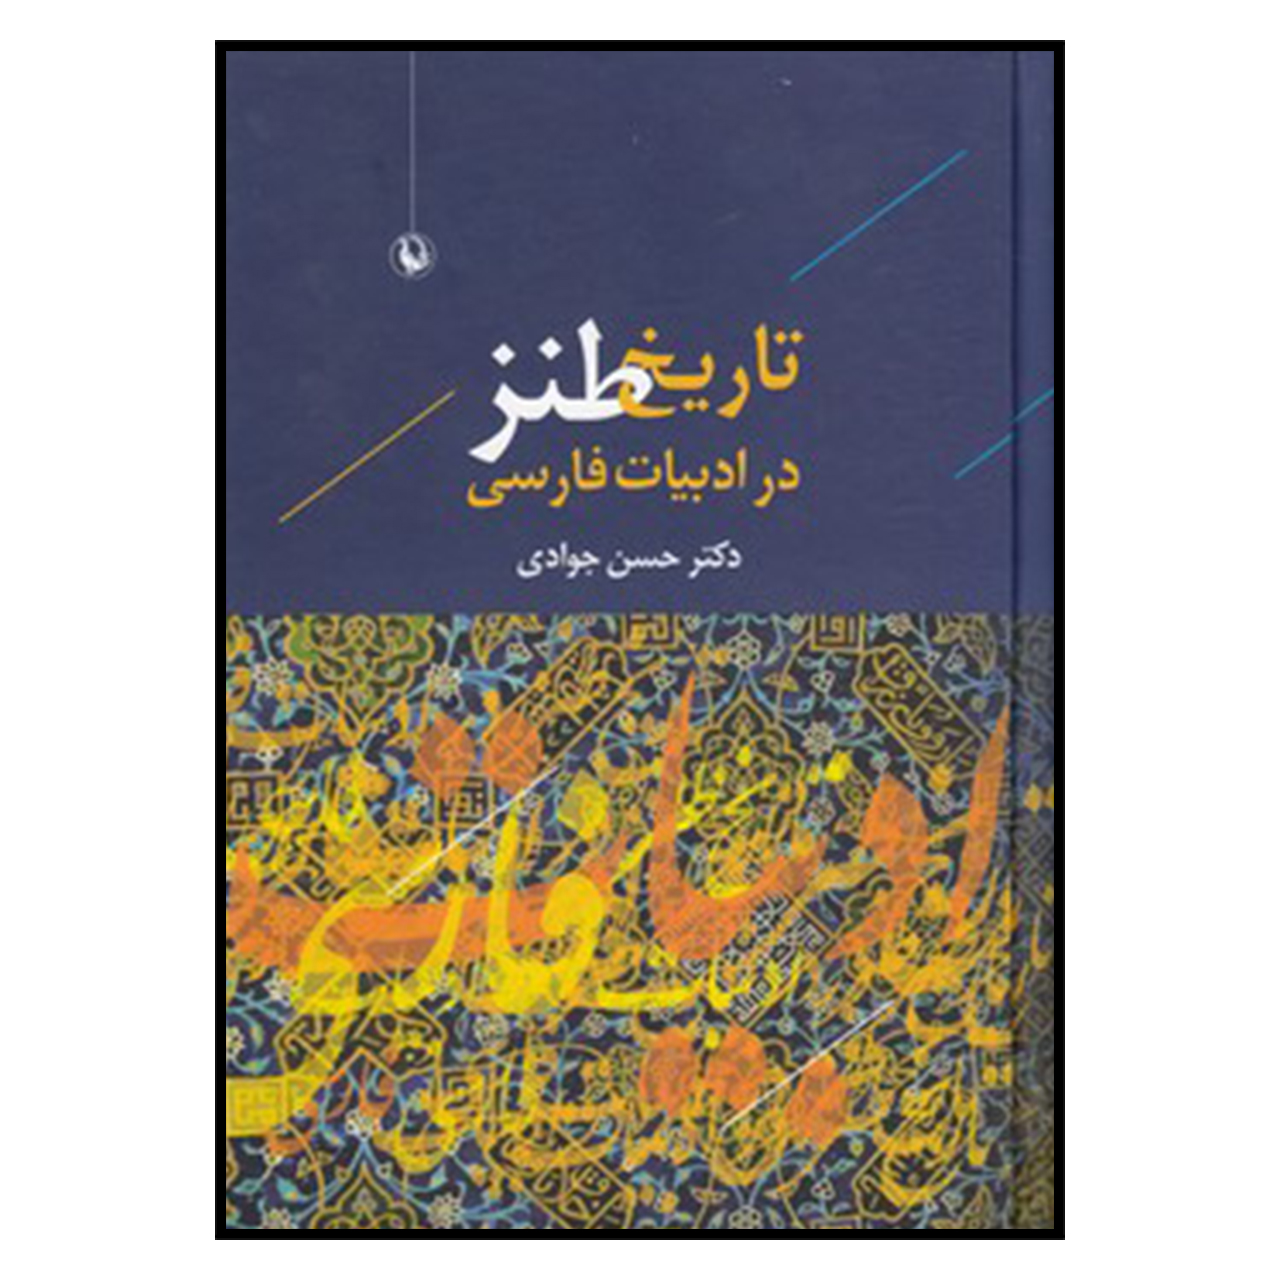 کتاب تاريخ طنز در ادبيات فارسي اثر حسن جوادی
انتشارات مروارید